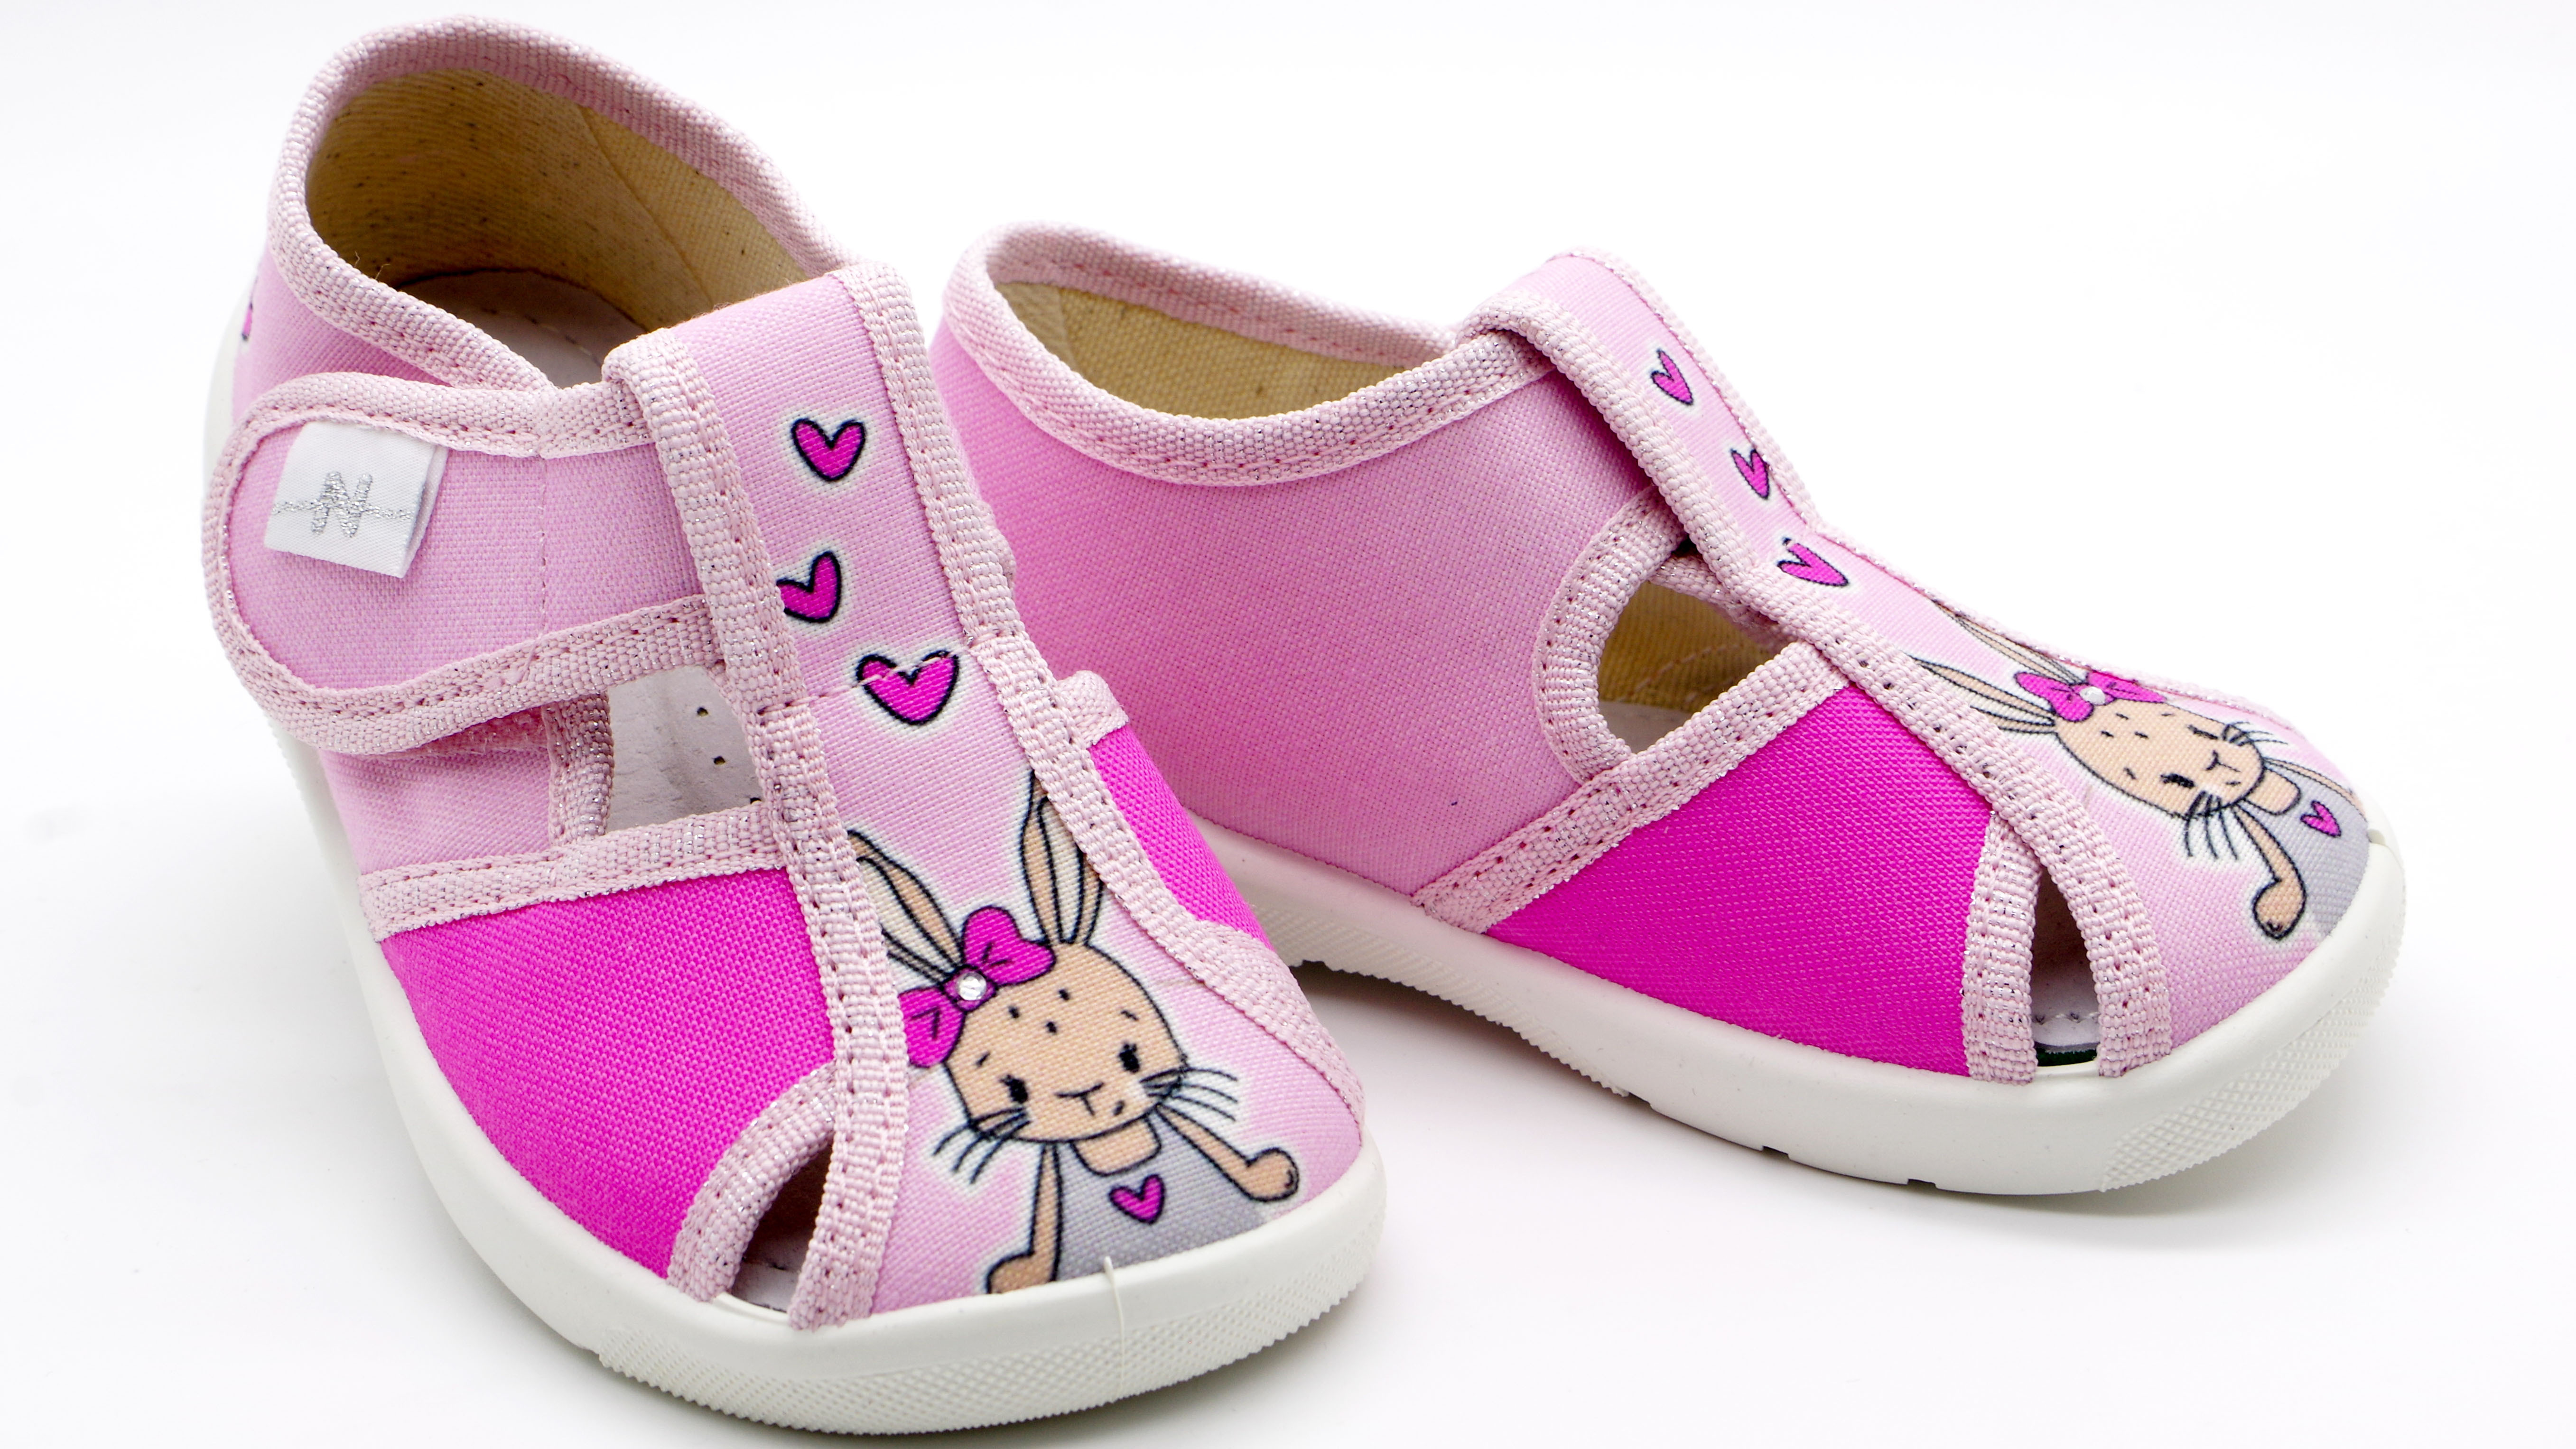 Текстильная обувь для девочек Тапочки Merlin (2205) цвет Розовый 18-25 размеры – Sole Kids. Фото 2